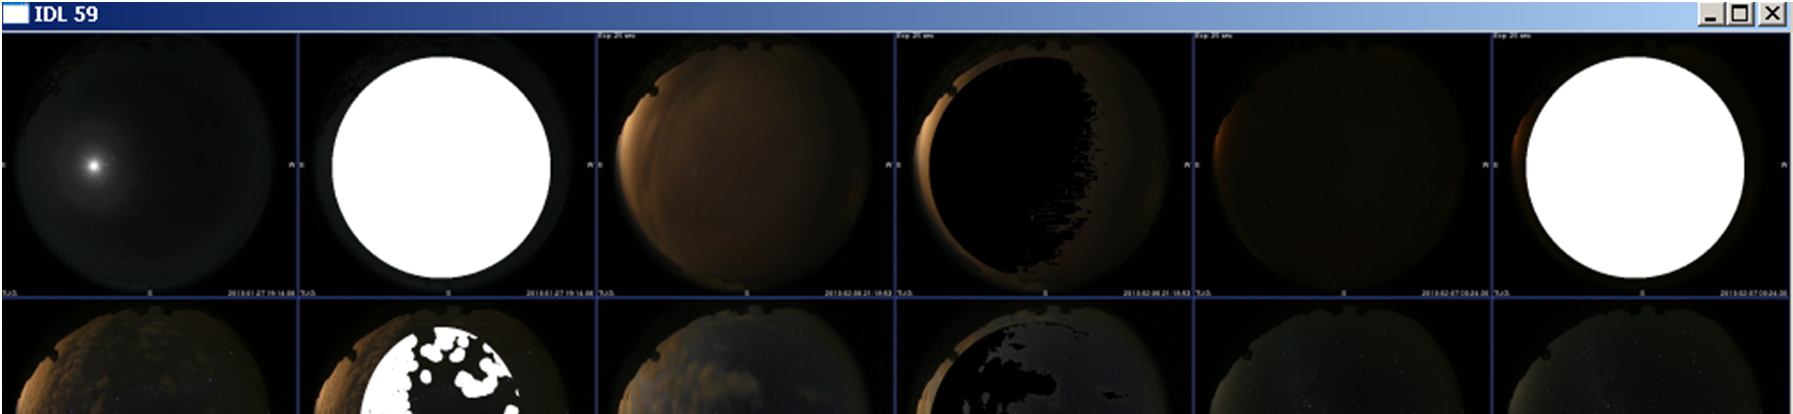 Şekil 5.3. Gece görüntüleri üzerinde yapılan analiz *Önce orijinal görüntü, hemen yanında bulut işaretlenmiş görüntü verilmiştir Şekil 5.4.